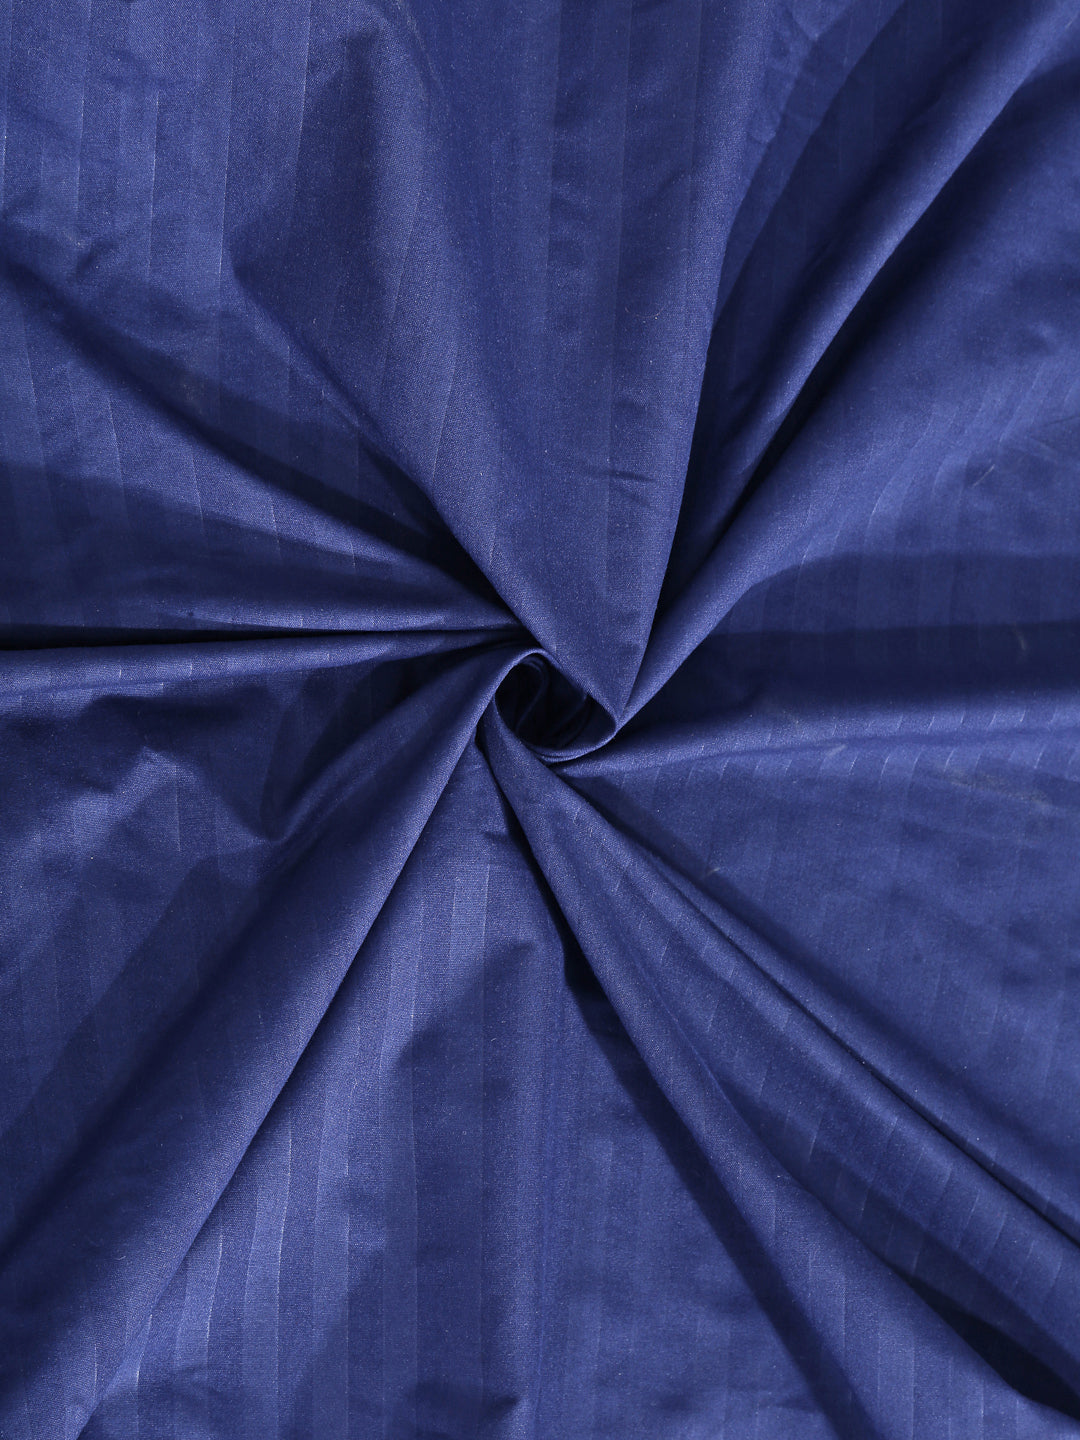 Arrabi Blue Stripes TC Cotton Blend Super King Size Bedsheet with 2 Pillow Covers (270 X 260 cm)